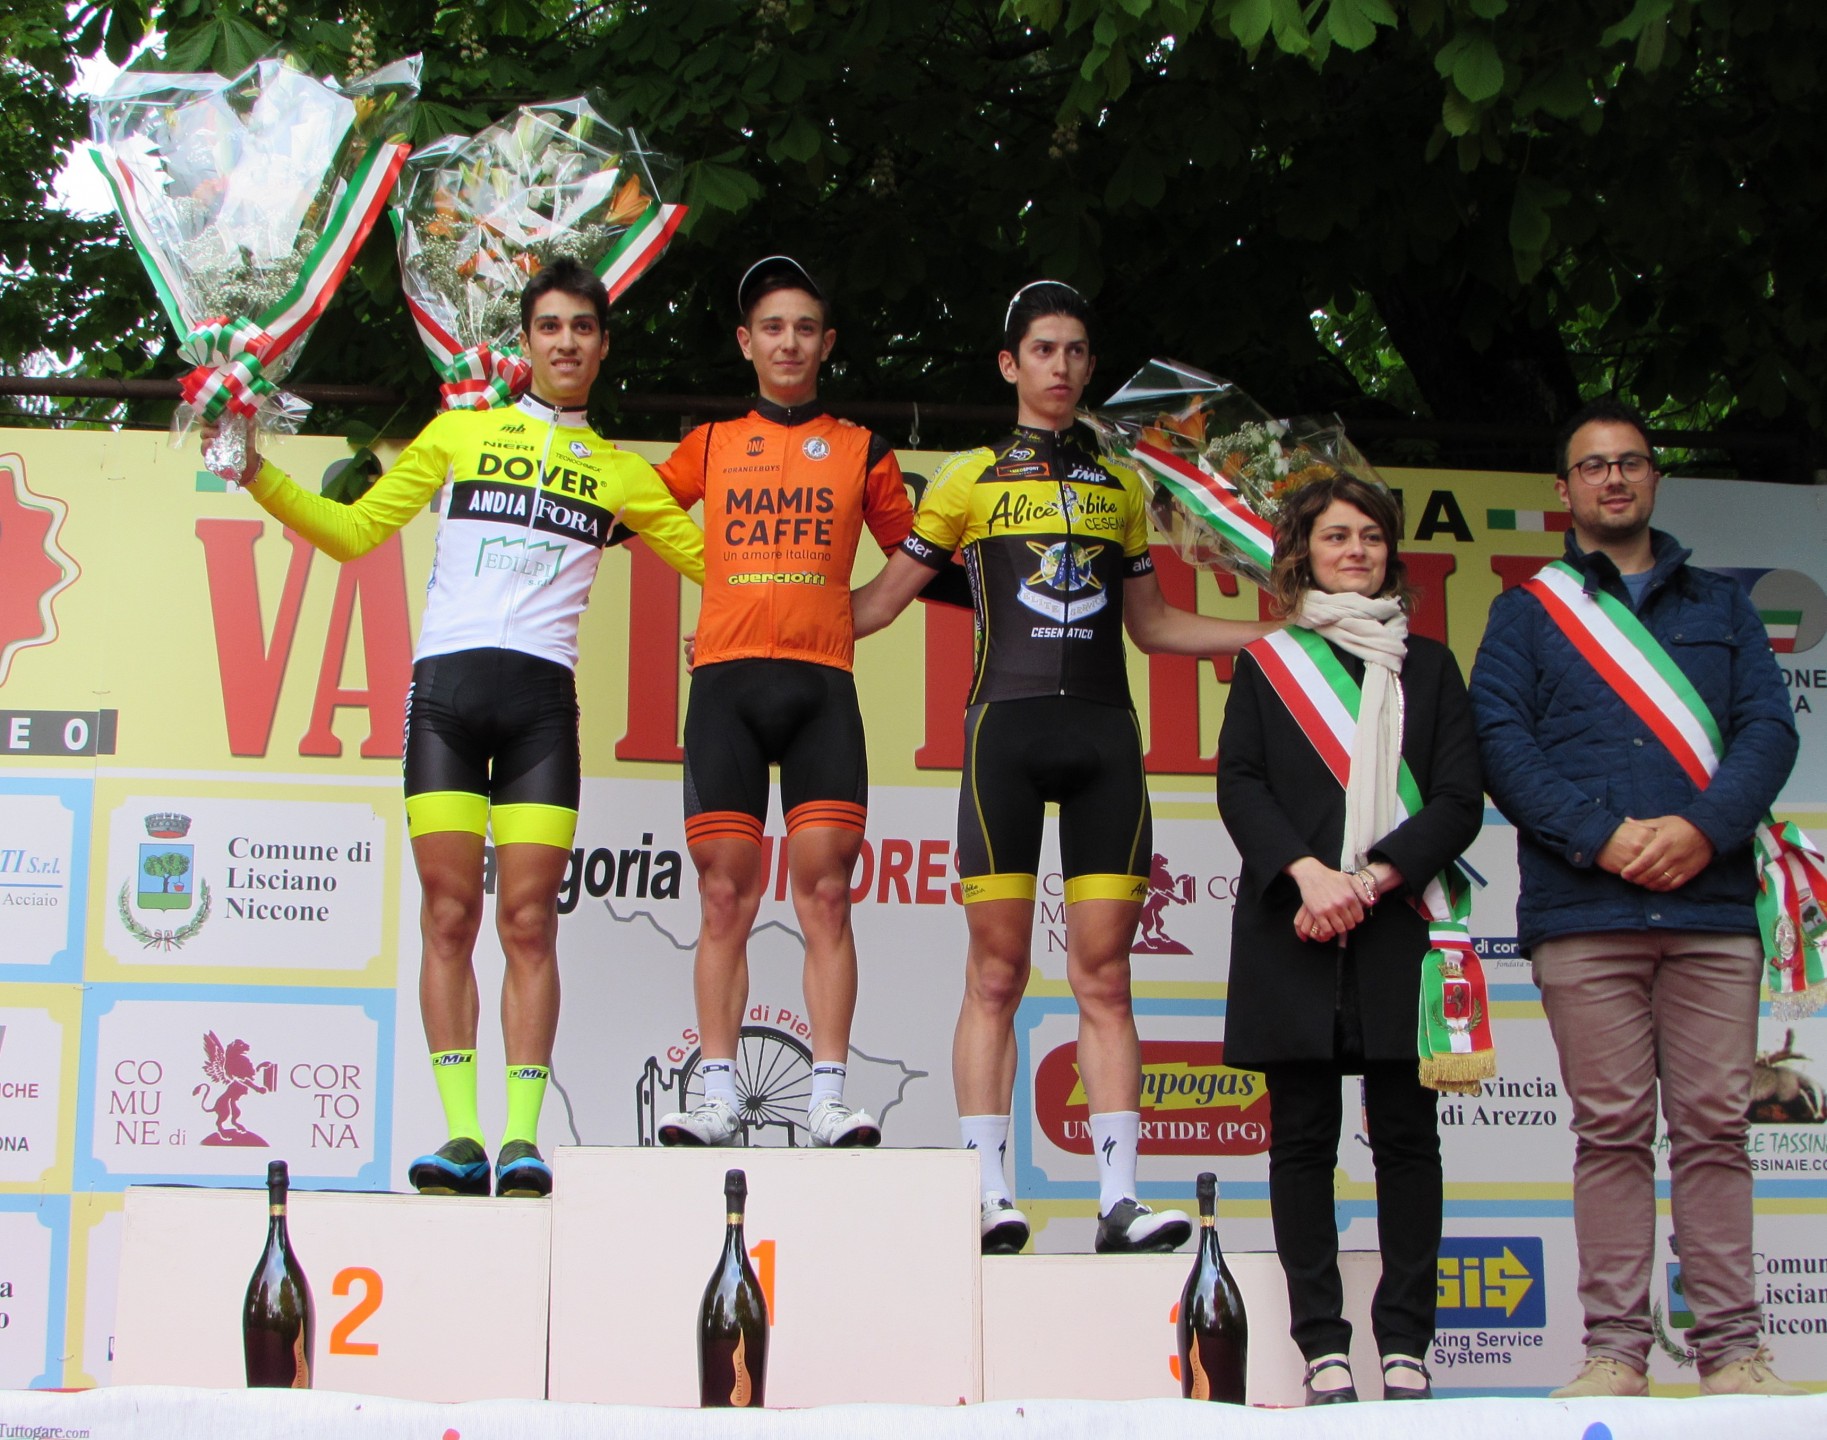 Trofeo Val di Pierle: Gabriele Benedetti trionfa